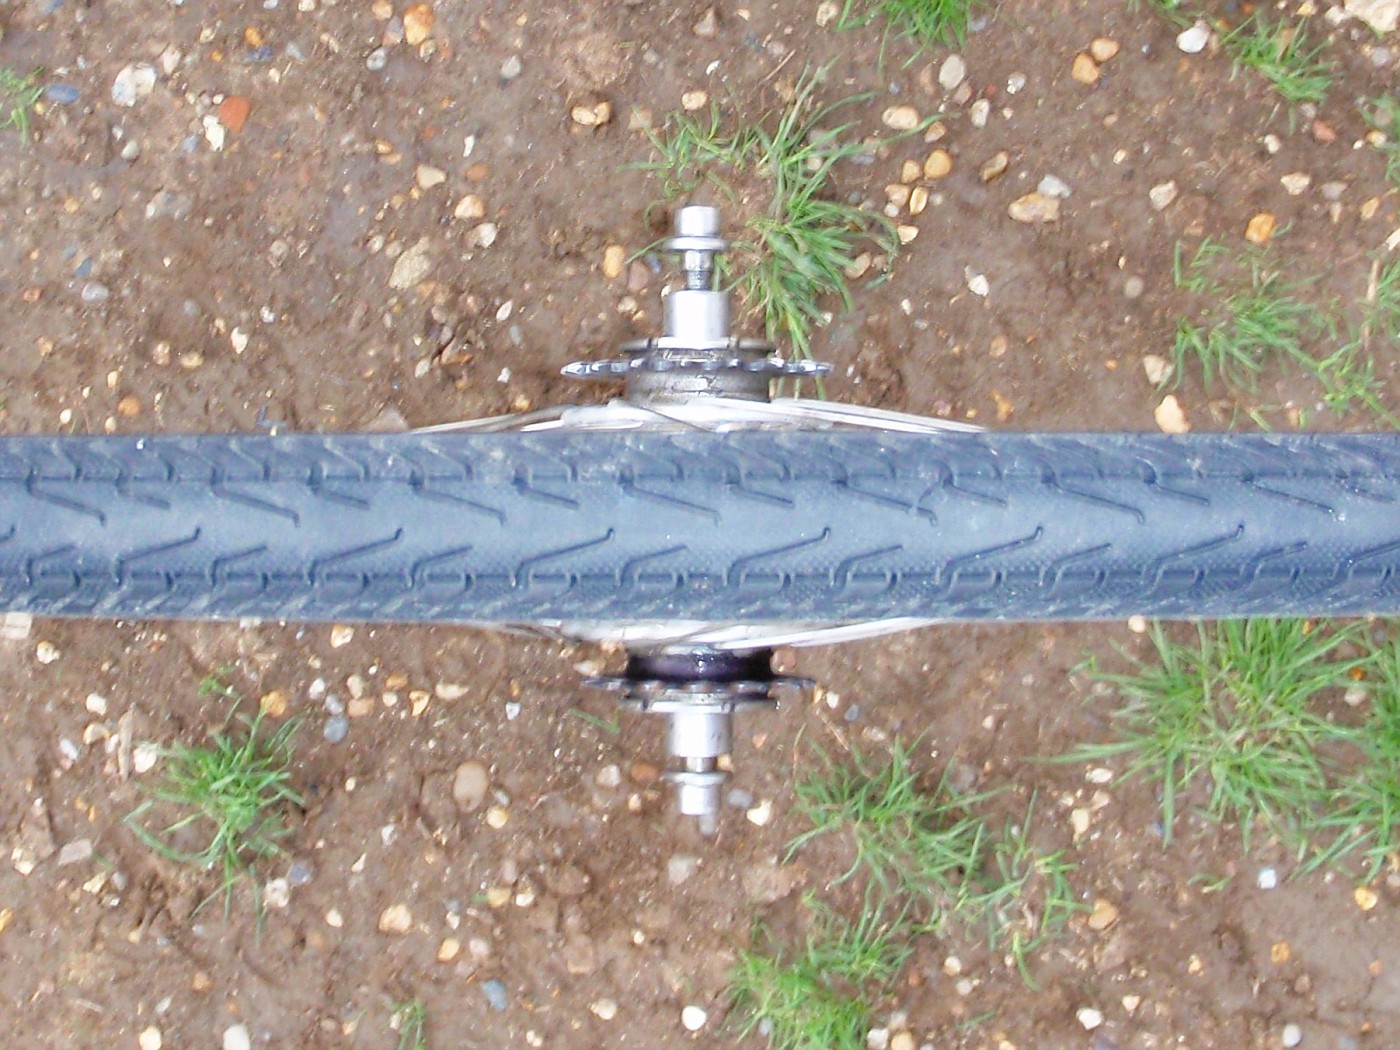 Rear wheel of Spencer's bike with 2 fixed gear wheels